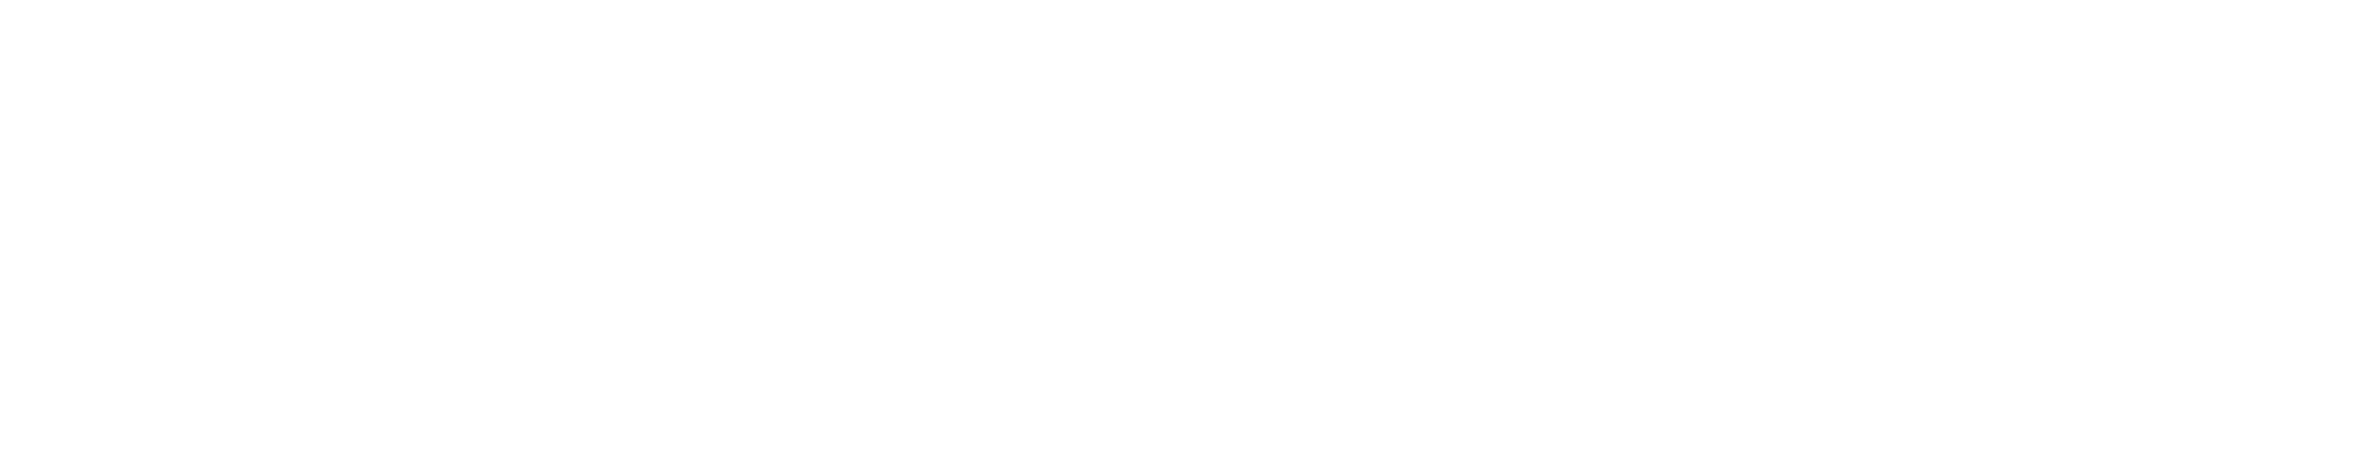 tandoorinawab_logo